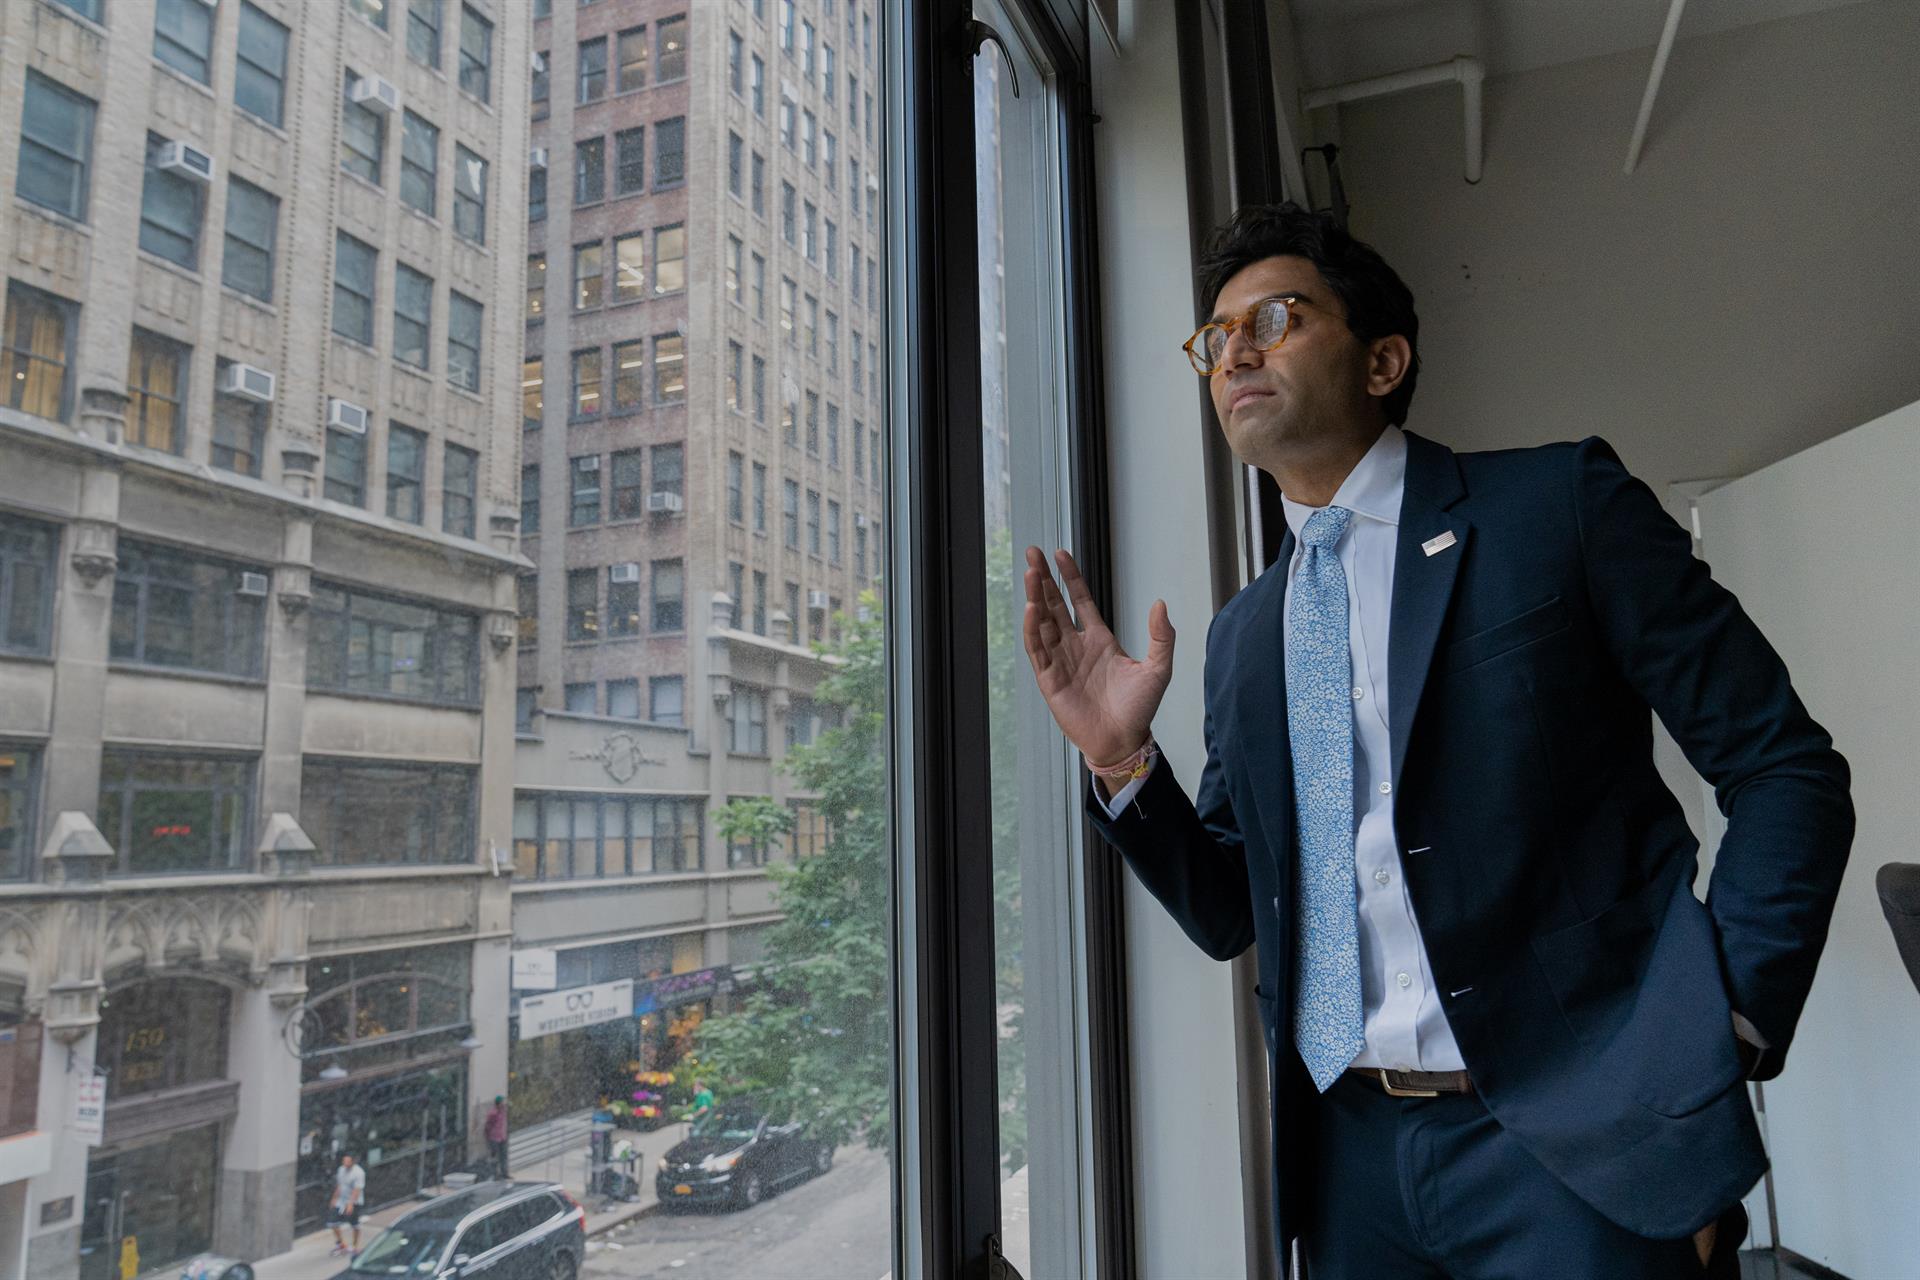 El abogado y empresario Suraj Patel, candidato demócrata al distrito congresional 12 de Nueva York, posa durante una entrevista con Efe el 20 de julio de 2022, en Nueva York (EE.UU.). EFE/ Ángel Colmenares
